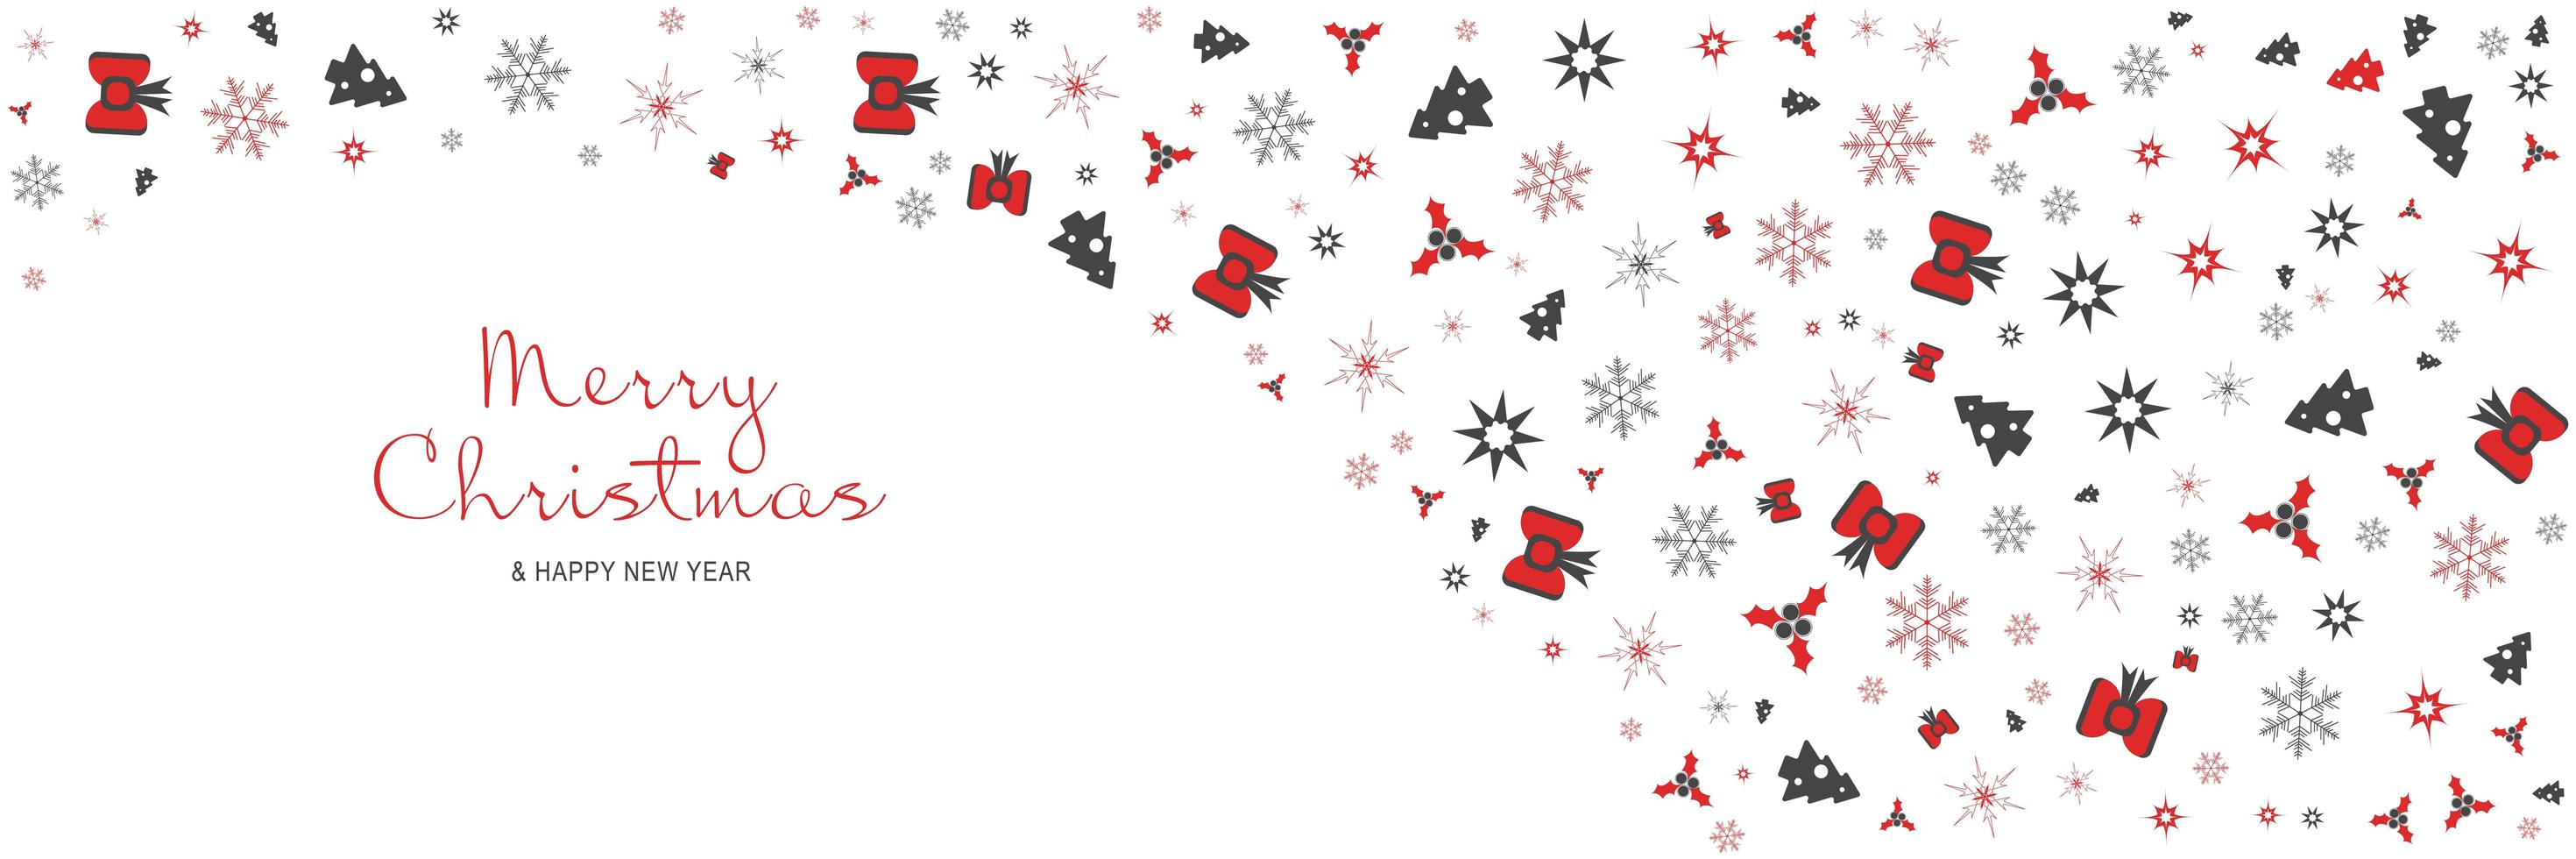 Frohe Weihnachten und neues Jahr 2022 Poster. Weihnachtsminimalbanner mit Bäumen, Schneeflocken, Sternenmustergrenze und Text auf weißem Hintergrund. horizontaler Web-Header. Vektor-Illustration für Grußkarten vektor